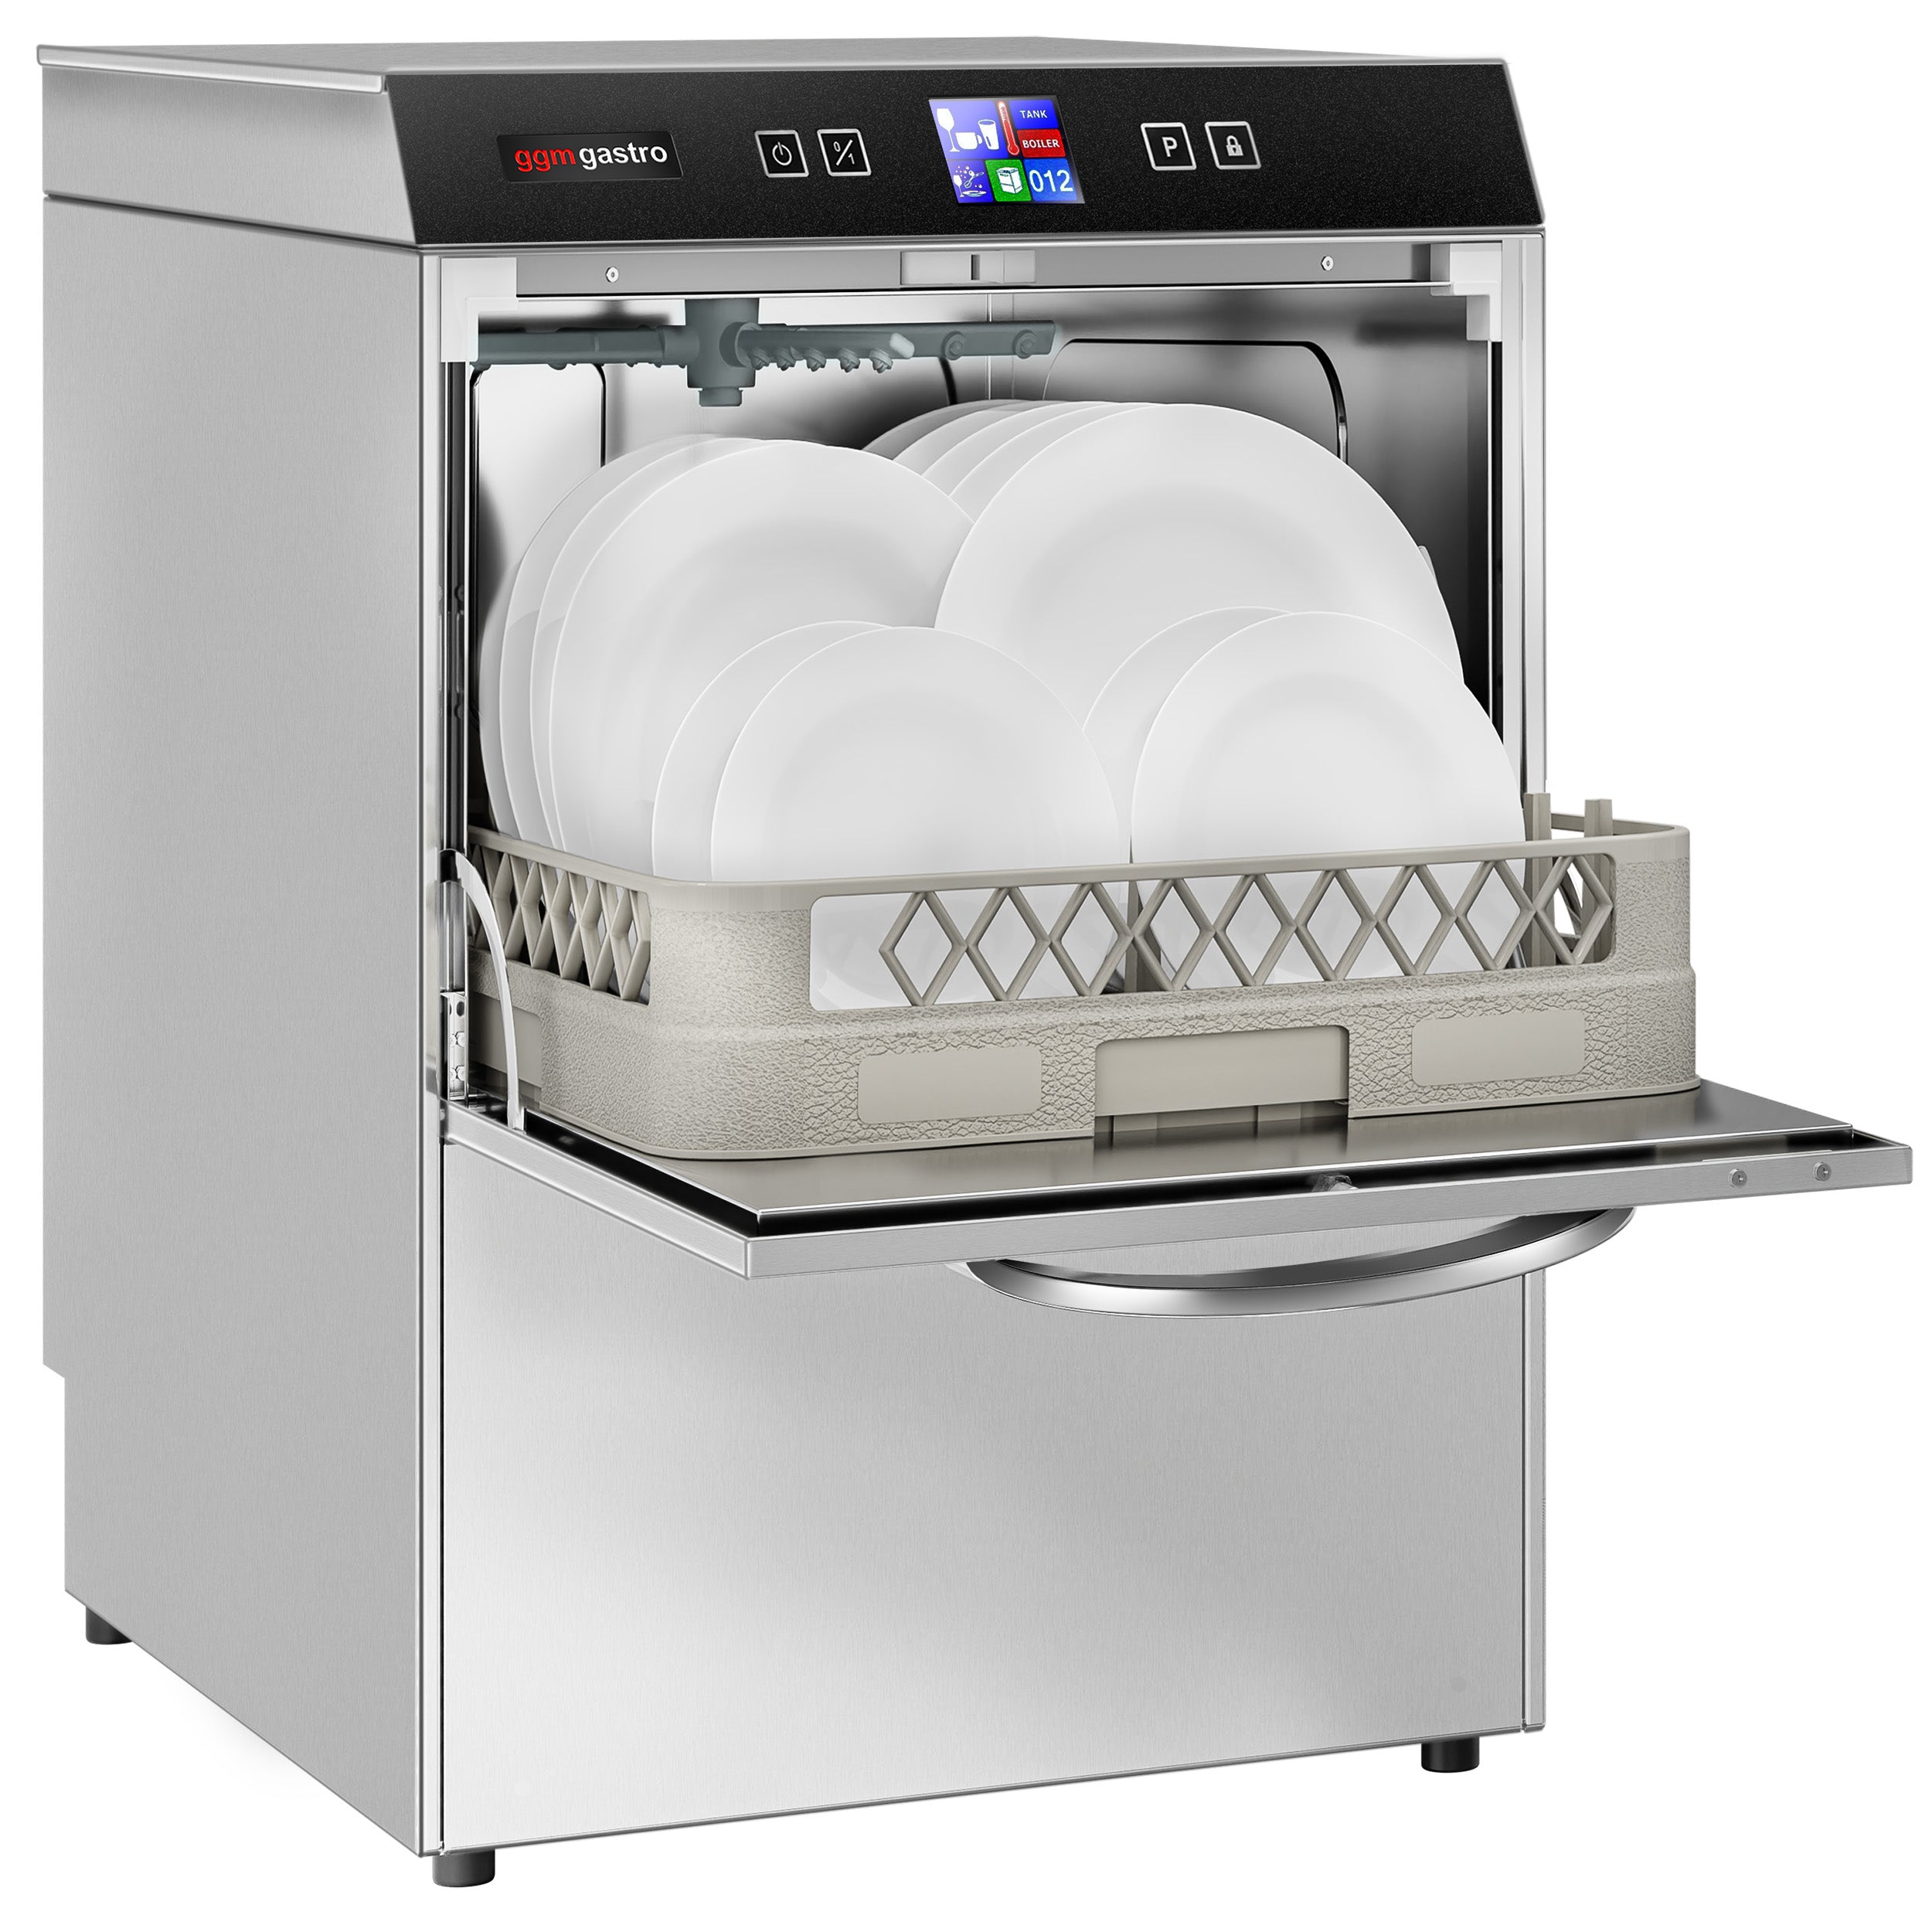 Opvaskemaskine - Digital - 3,55 kW - med vaskemiddel, afspændingsmiddel og ludpumpe